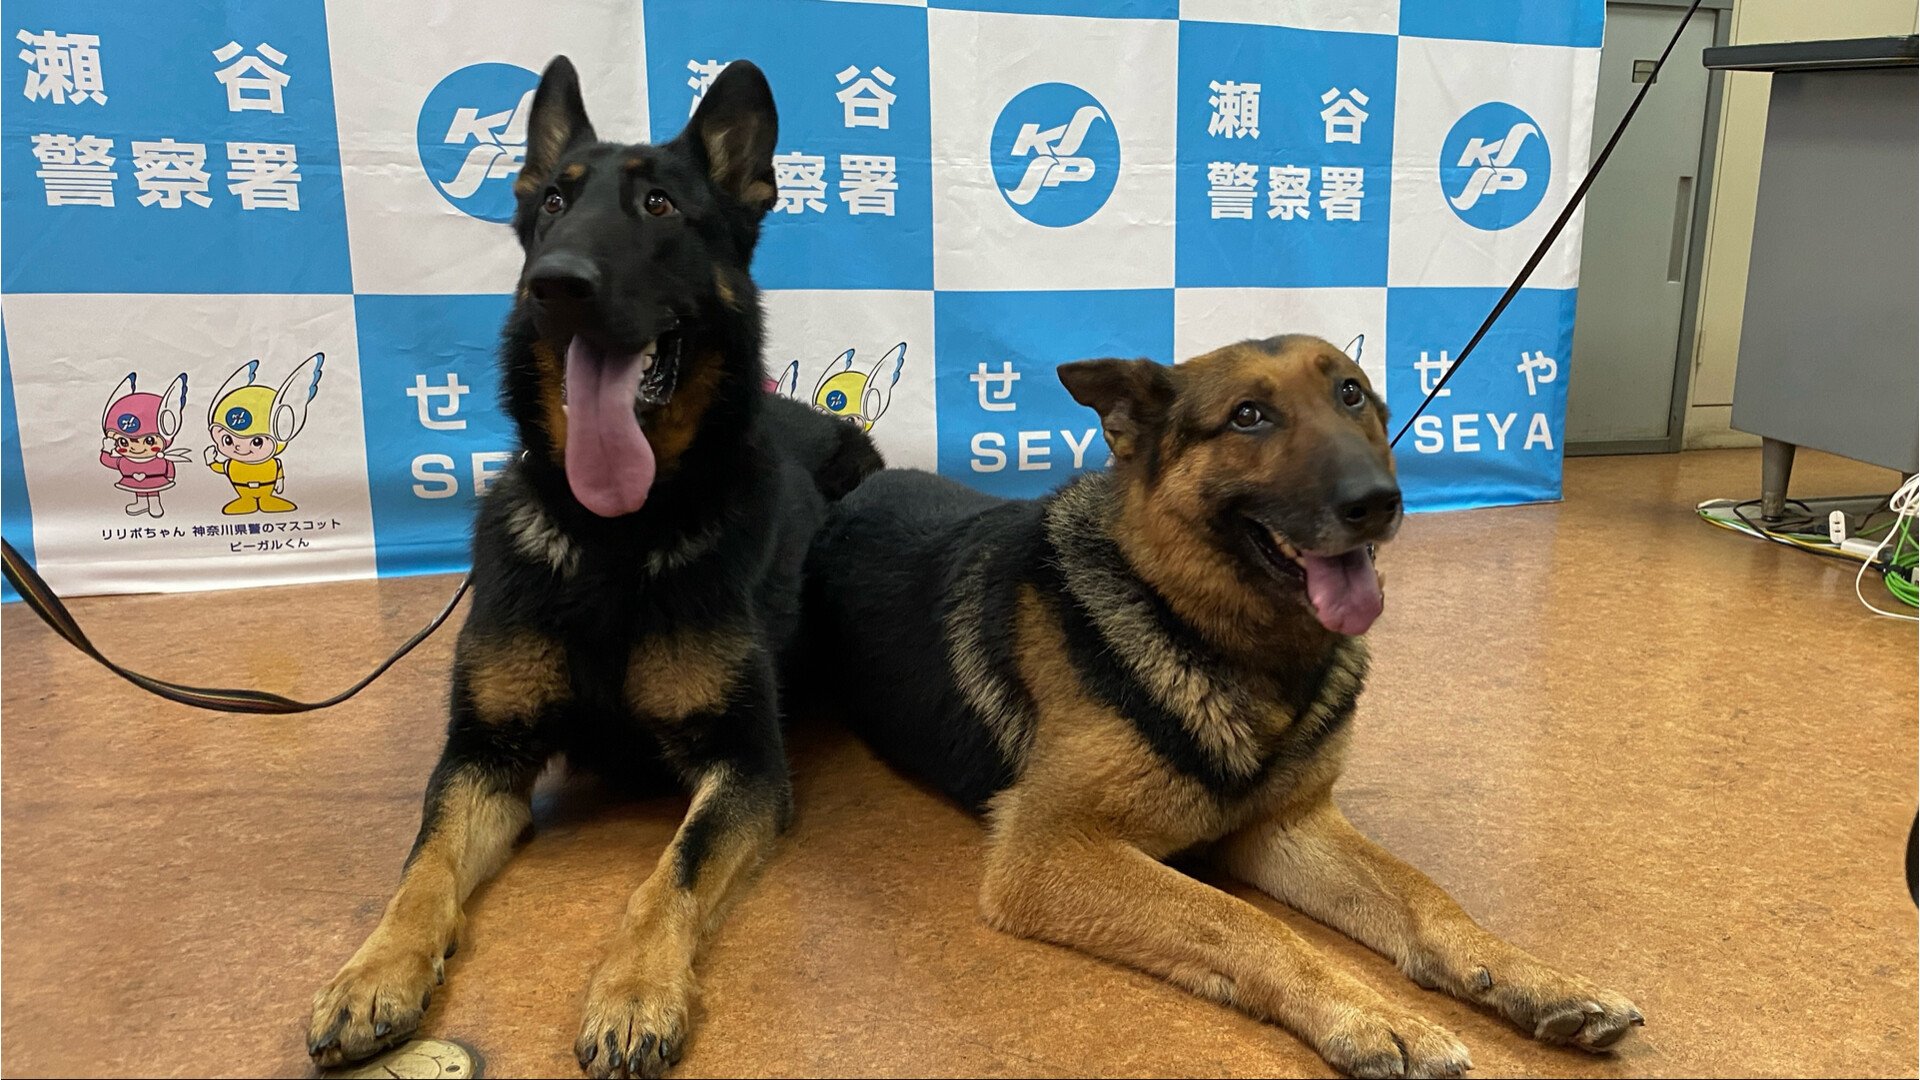 わずか20分で行方不明者を発見　お手柄警察犬を表彰　神奈川県警瀬谷警察署